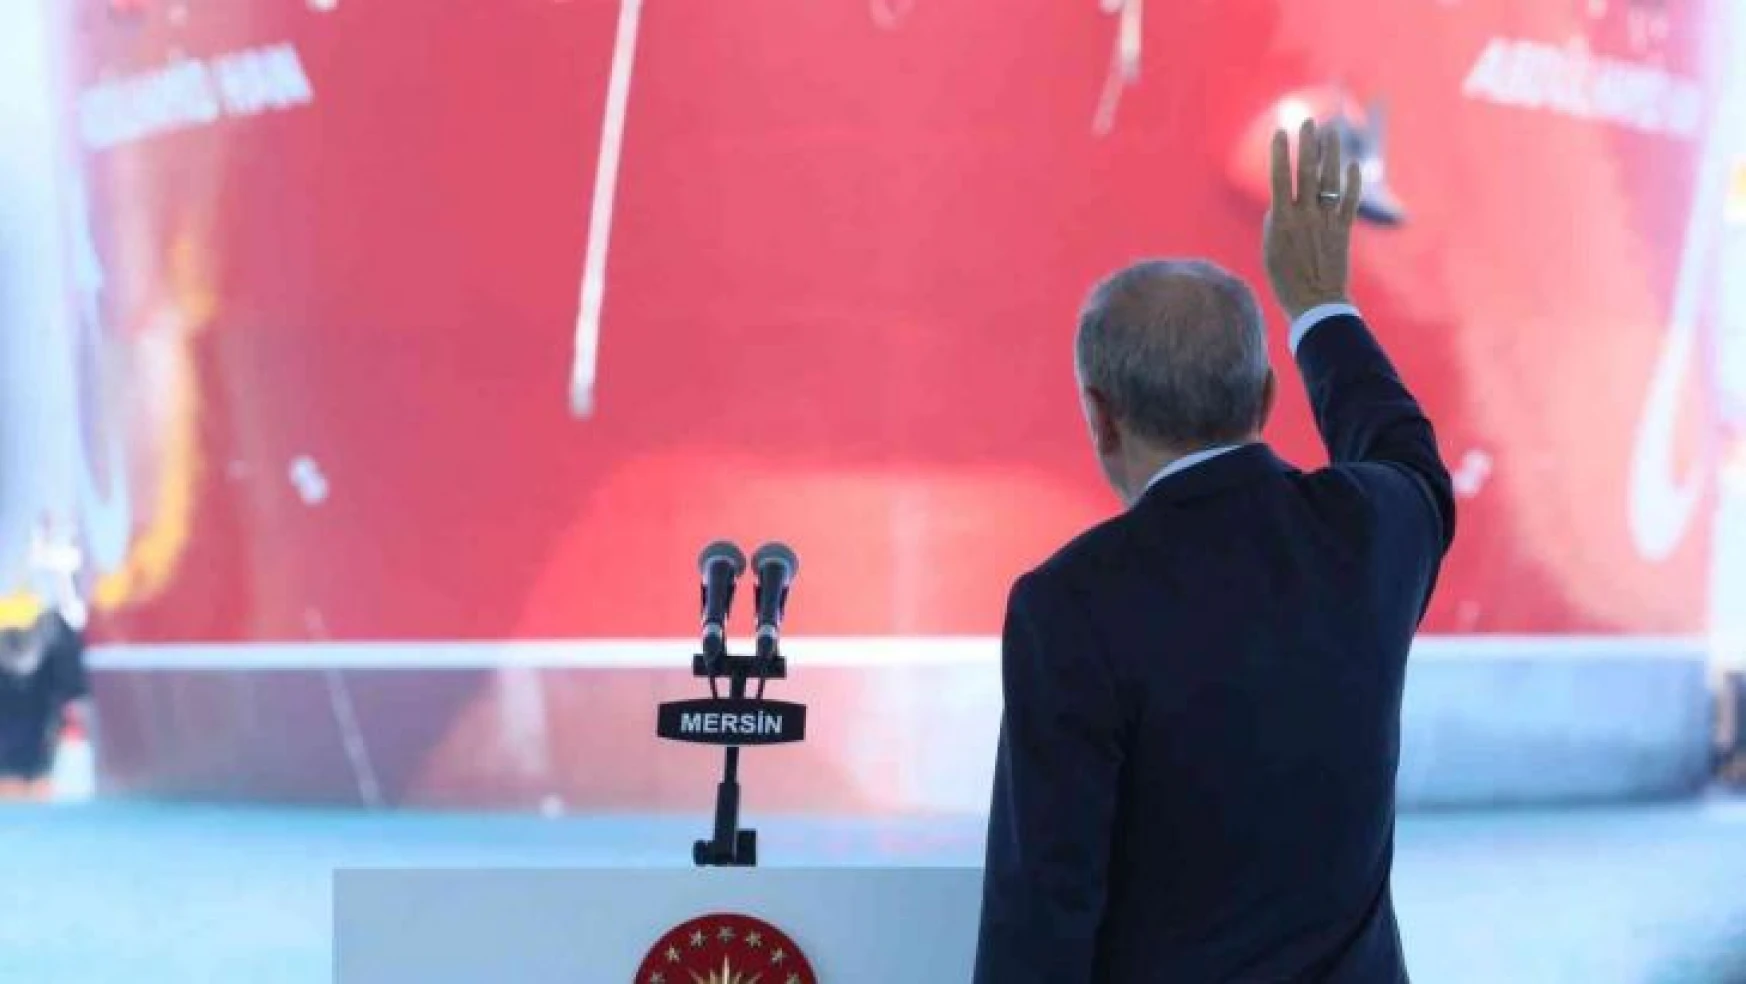 'Abdulhamid Han' Cumhurbaşkanı Erdoğan'ın katıldığı törenle Akdeniz'e uğurlandı